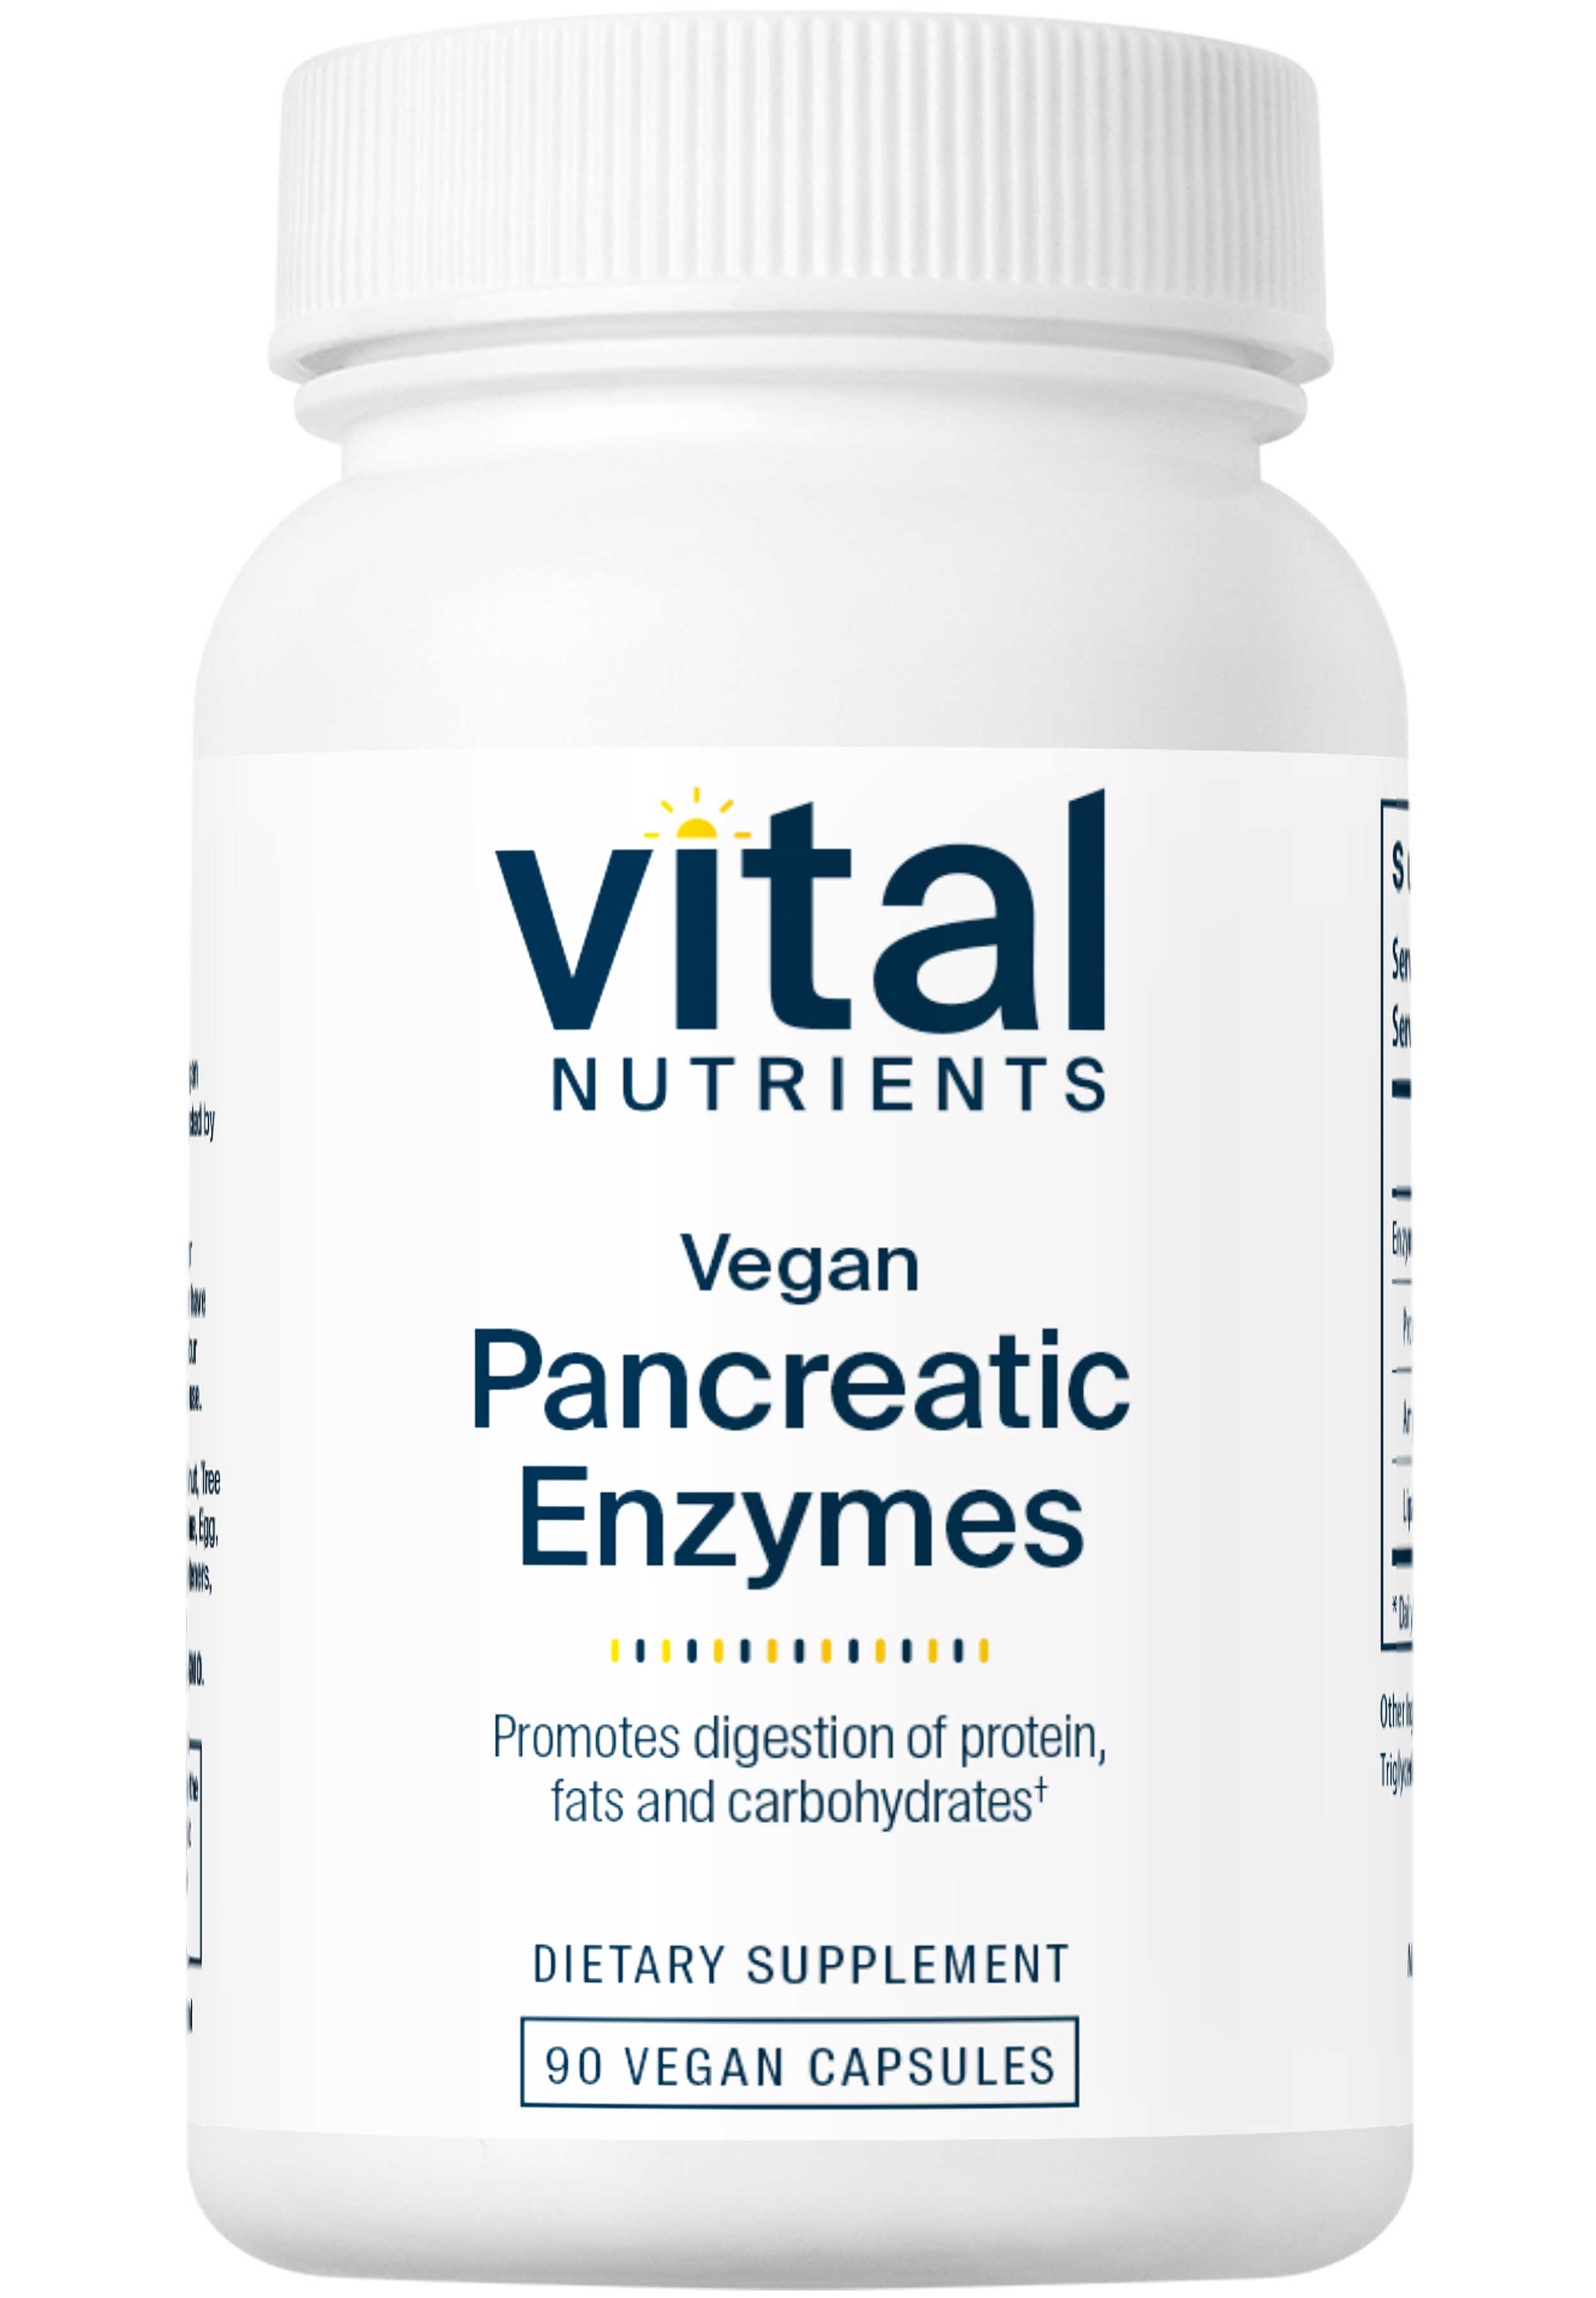 Vital Nutrients Vegan Pancreatic Enzymes